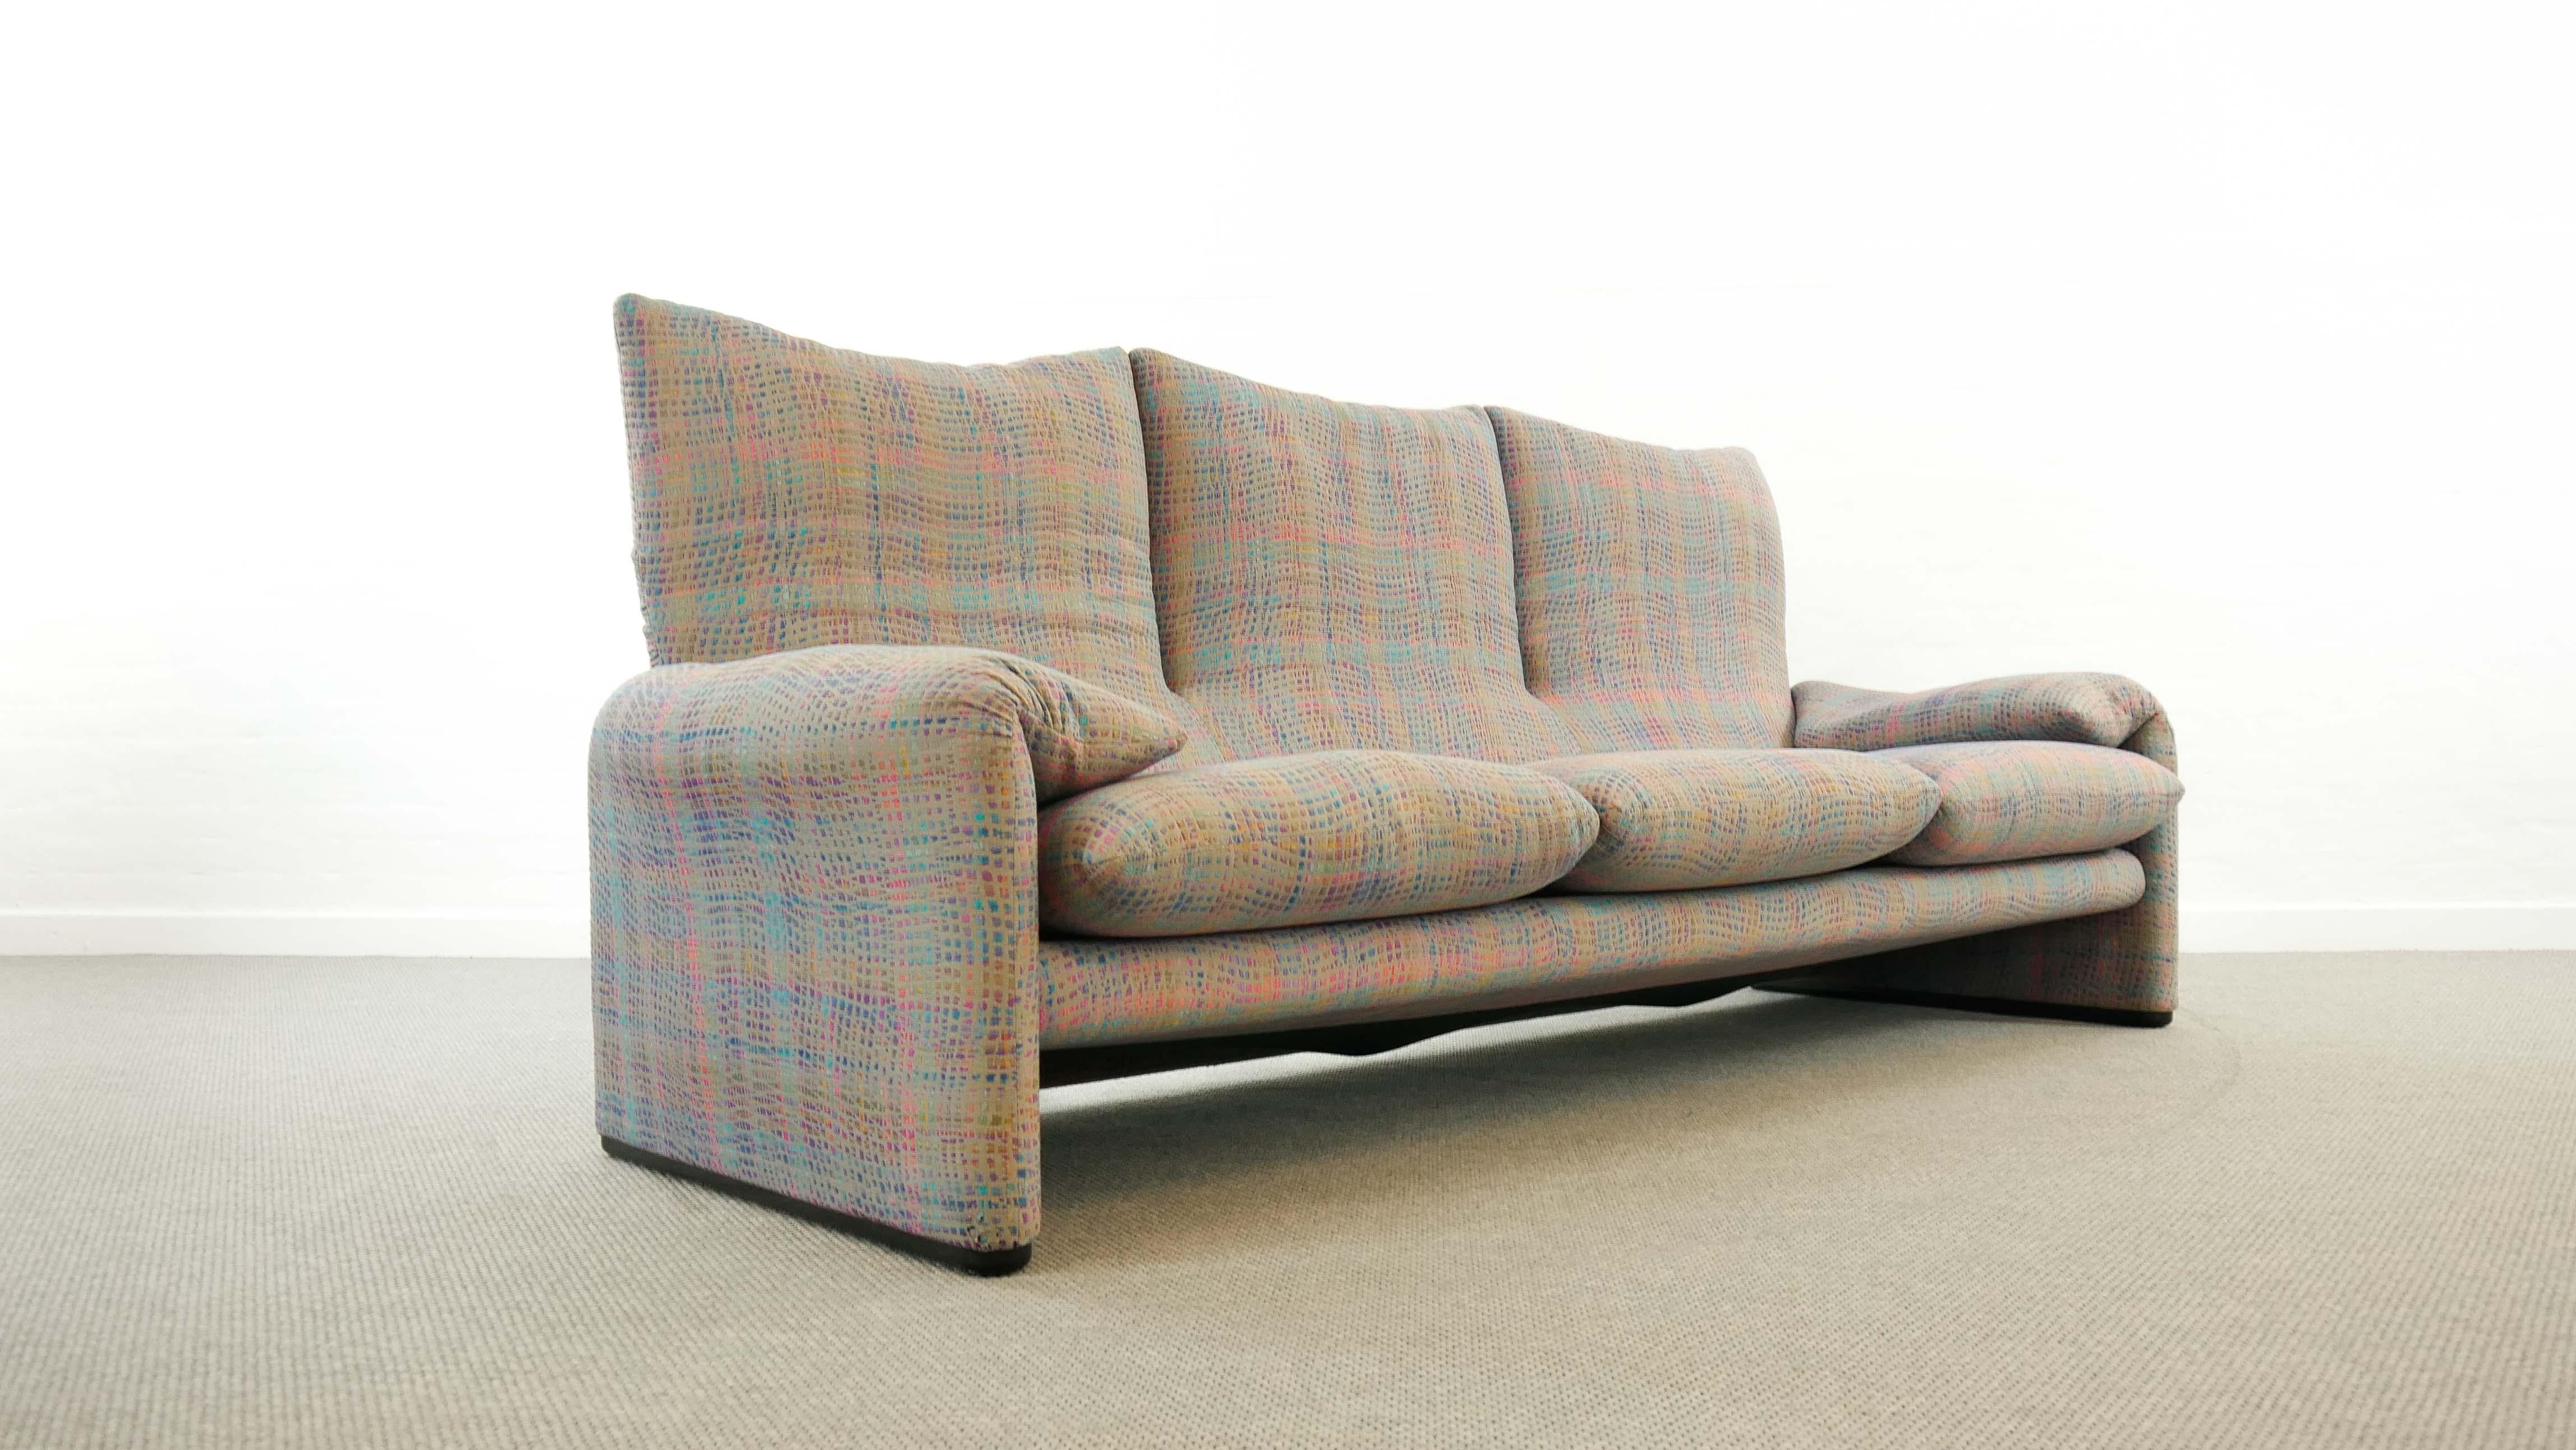 Maralunga 3-Seat Sofa by Vico Magistretti for Cassina in Grey-Multicolore Fabric In Good Condition In Halle, DE